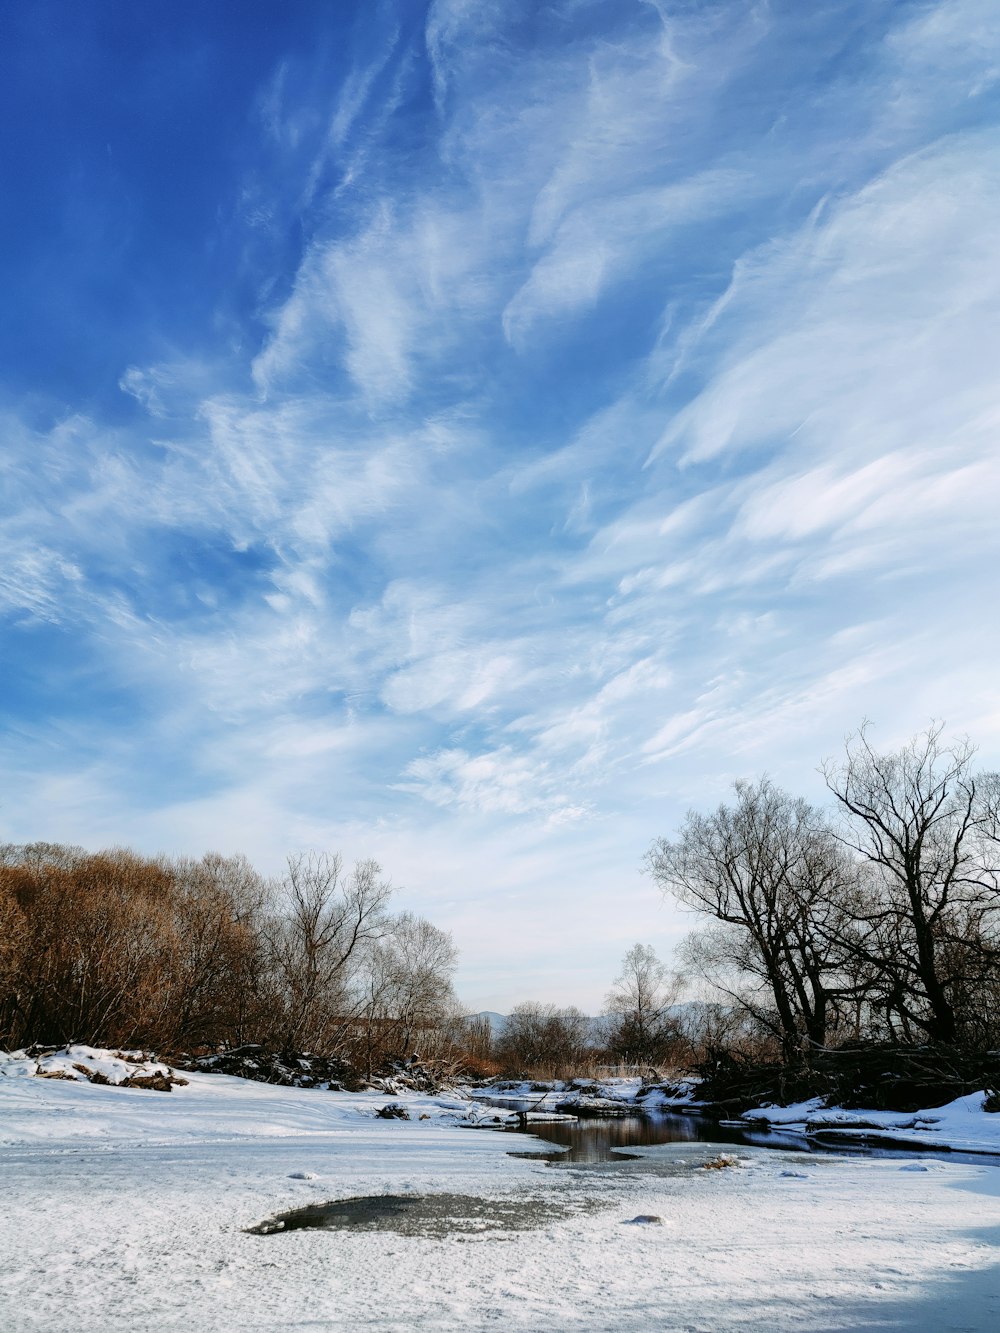 alberi spogli su terreno coperto di neve sotto cielo nuvoloso blu e bianco durante il giorno